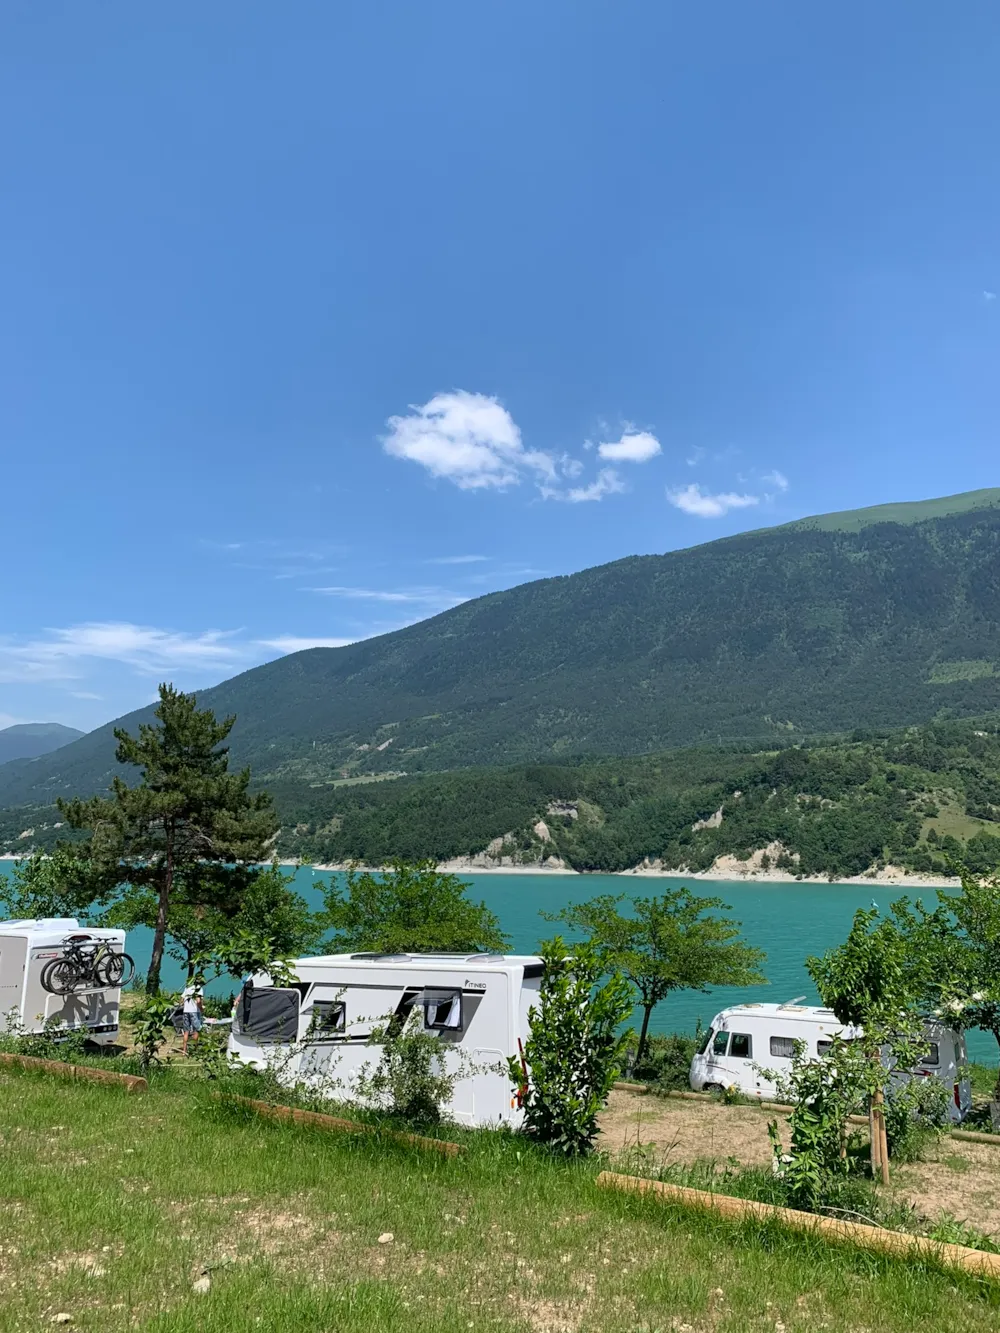 Standplaats bij het meer: omvat 1 voertuig, 1 tent of 1 caravan of 1 bestelwagen of 1 camper